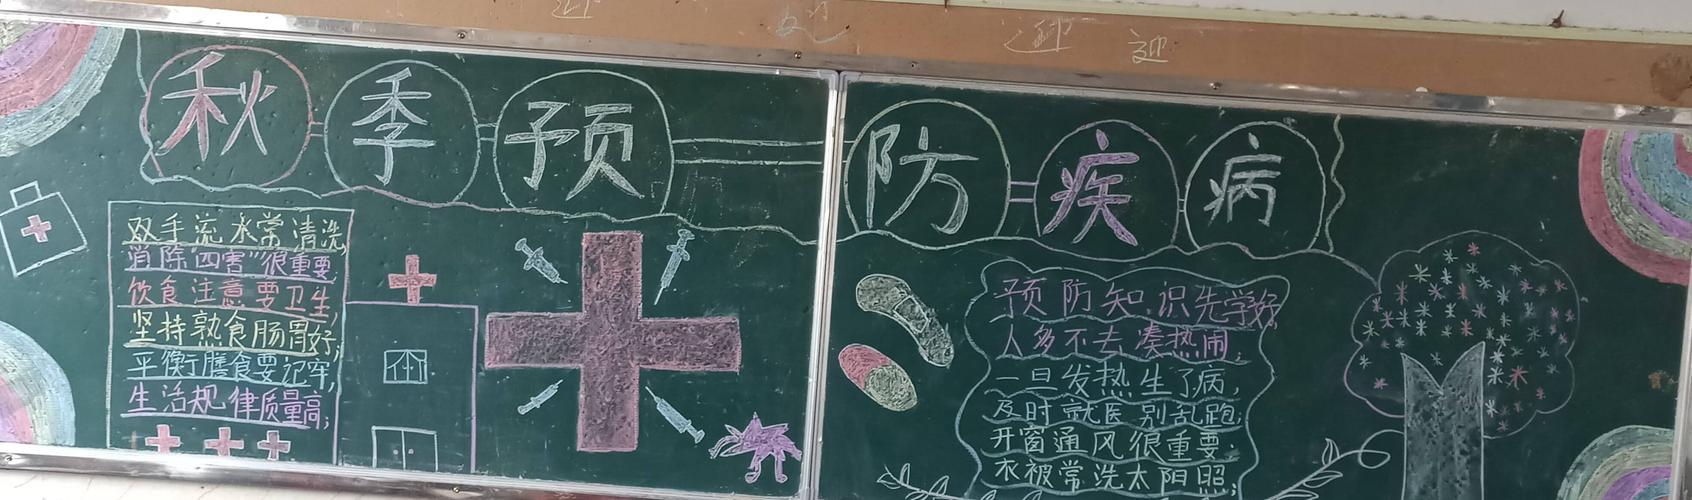 让学生们了解传染病及其危害我校组织了以预防传染病为主题的黑板报